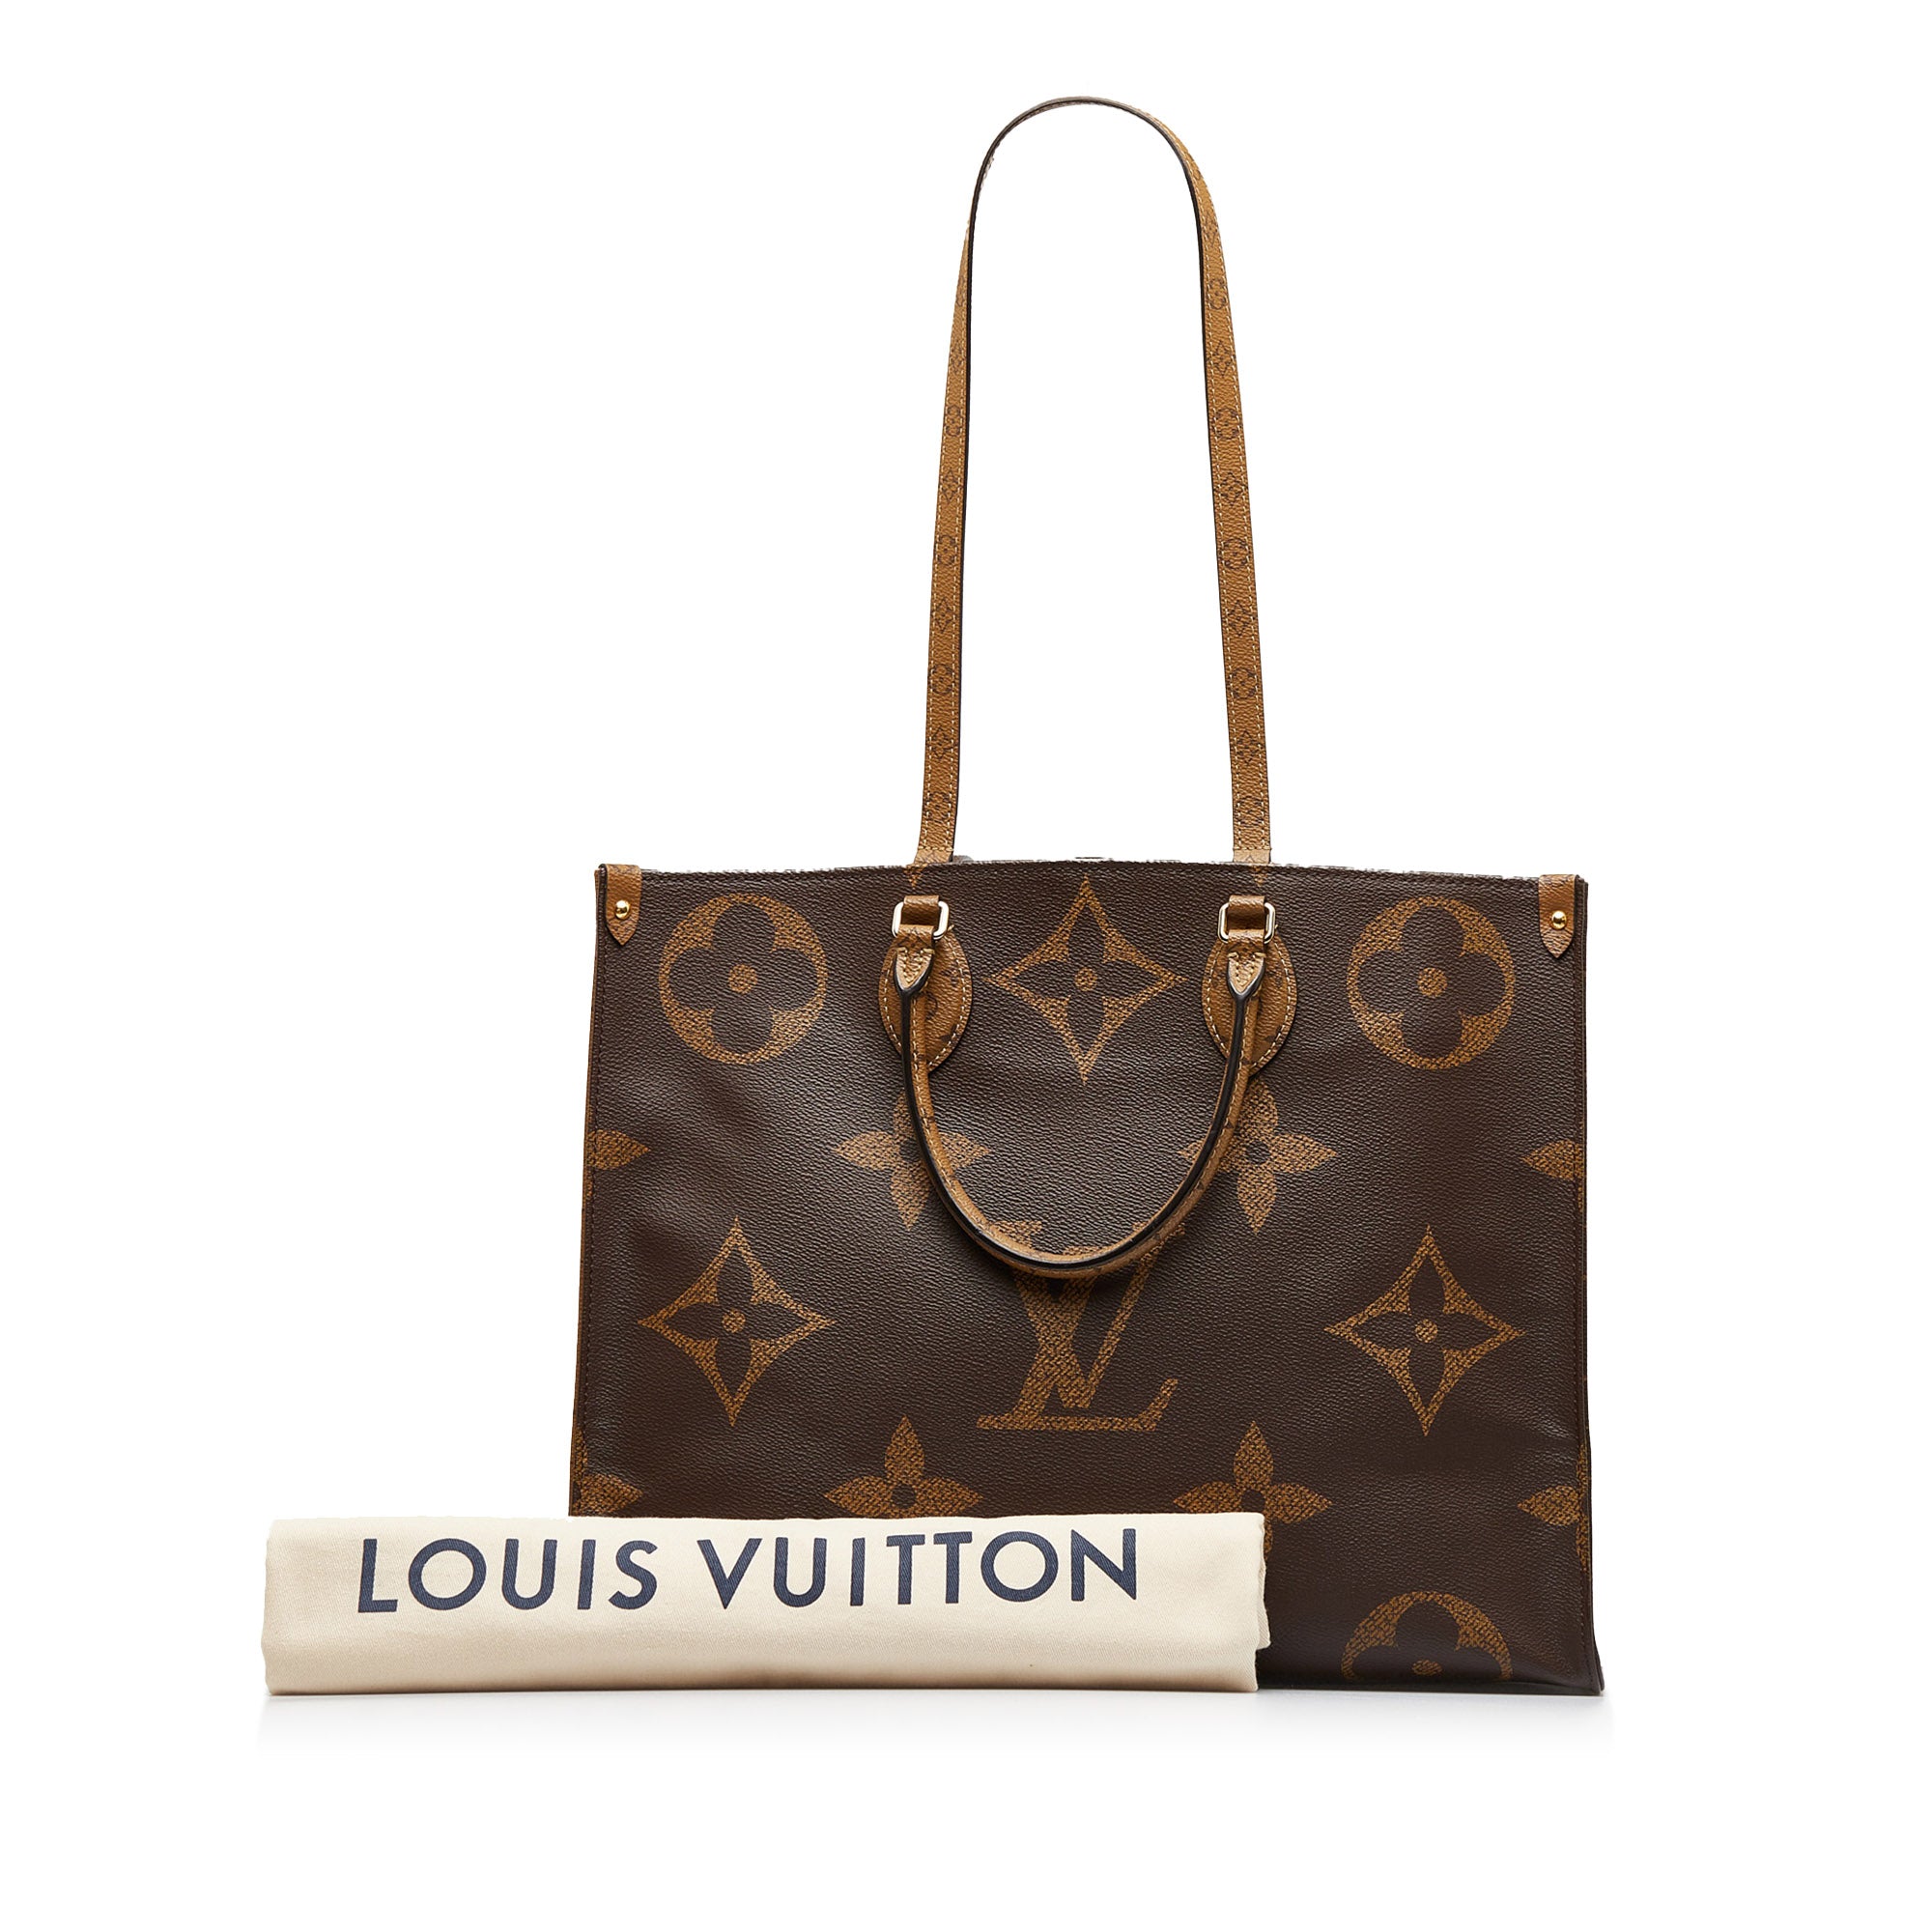 Louis Vuitton OnTheGo Reverse Monogram MM vs GM Review & Comparison 